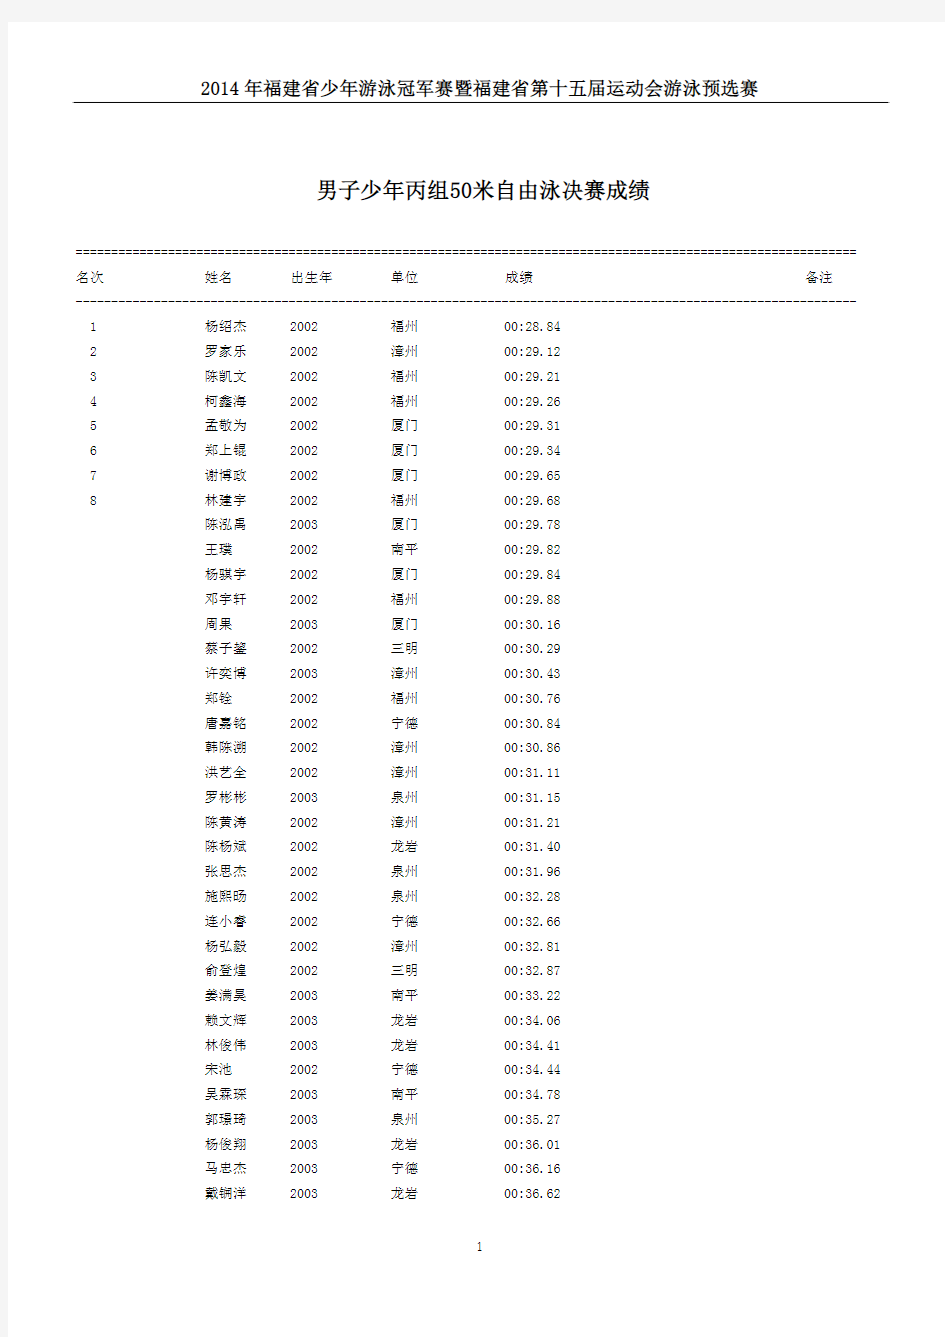 2014年福建省少年游泳冠军赛暨福建省第十五届运动会游泳预选赛成绩册(上传版本)20140525